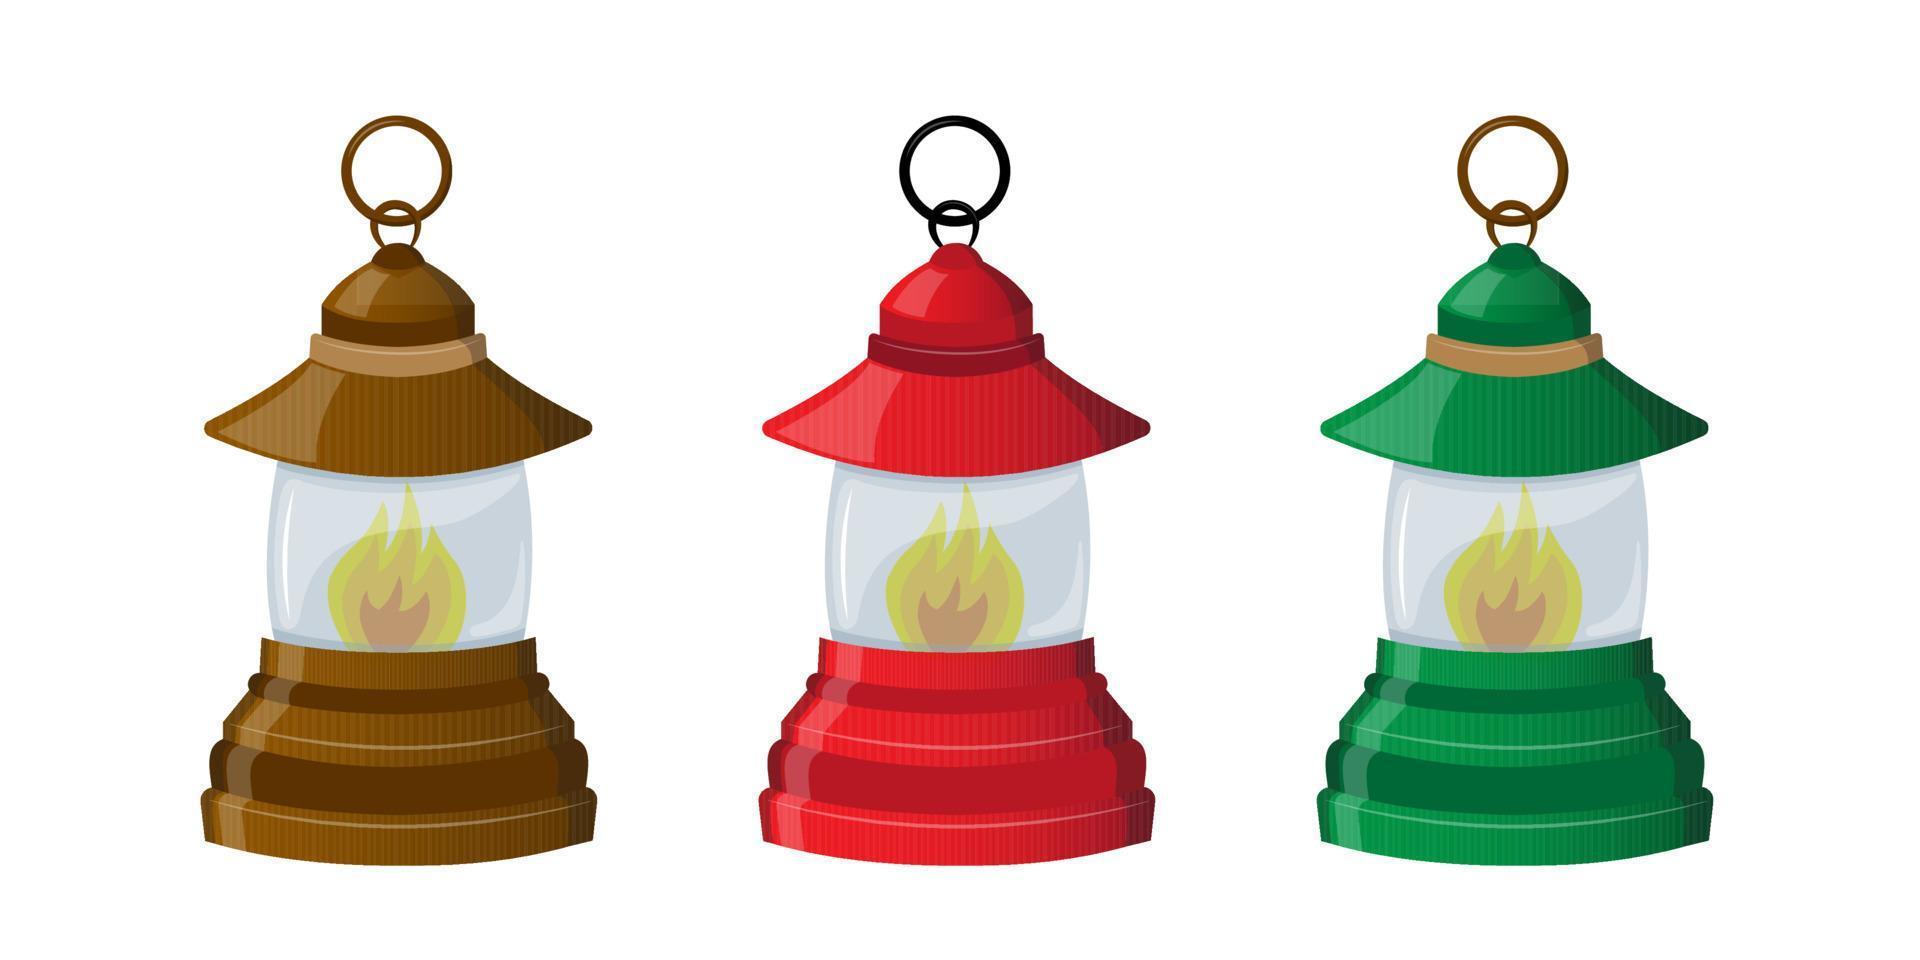 ensemble de Trois kérosène les lampes. les lampes pour camping, jardinage, camping, marche. vecteur illustration. dessin animé.